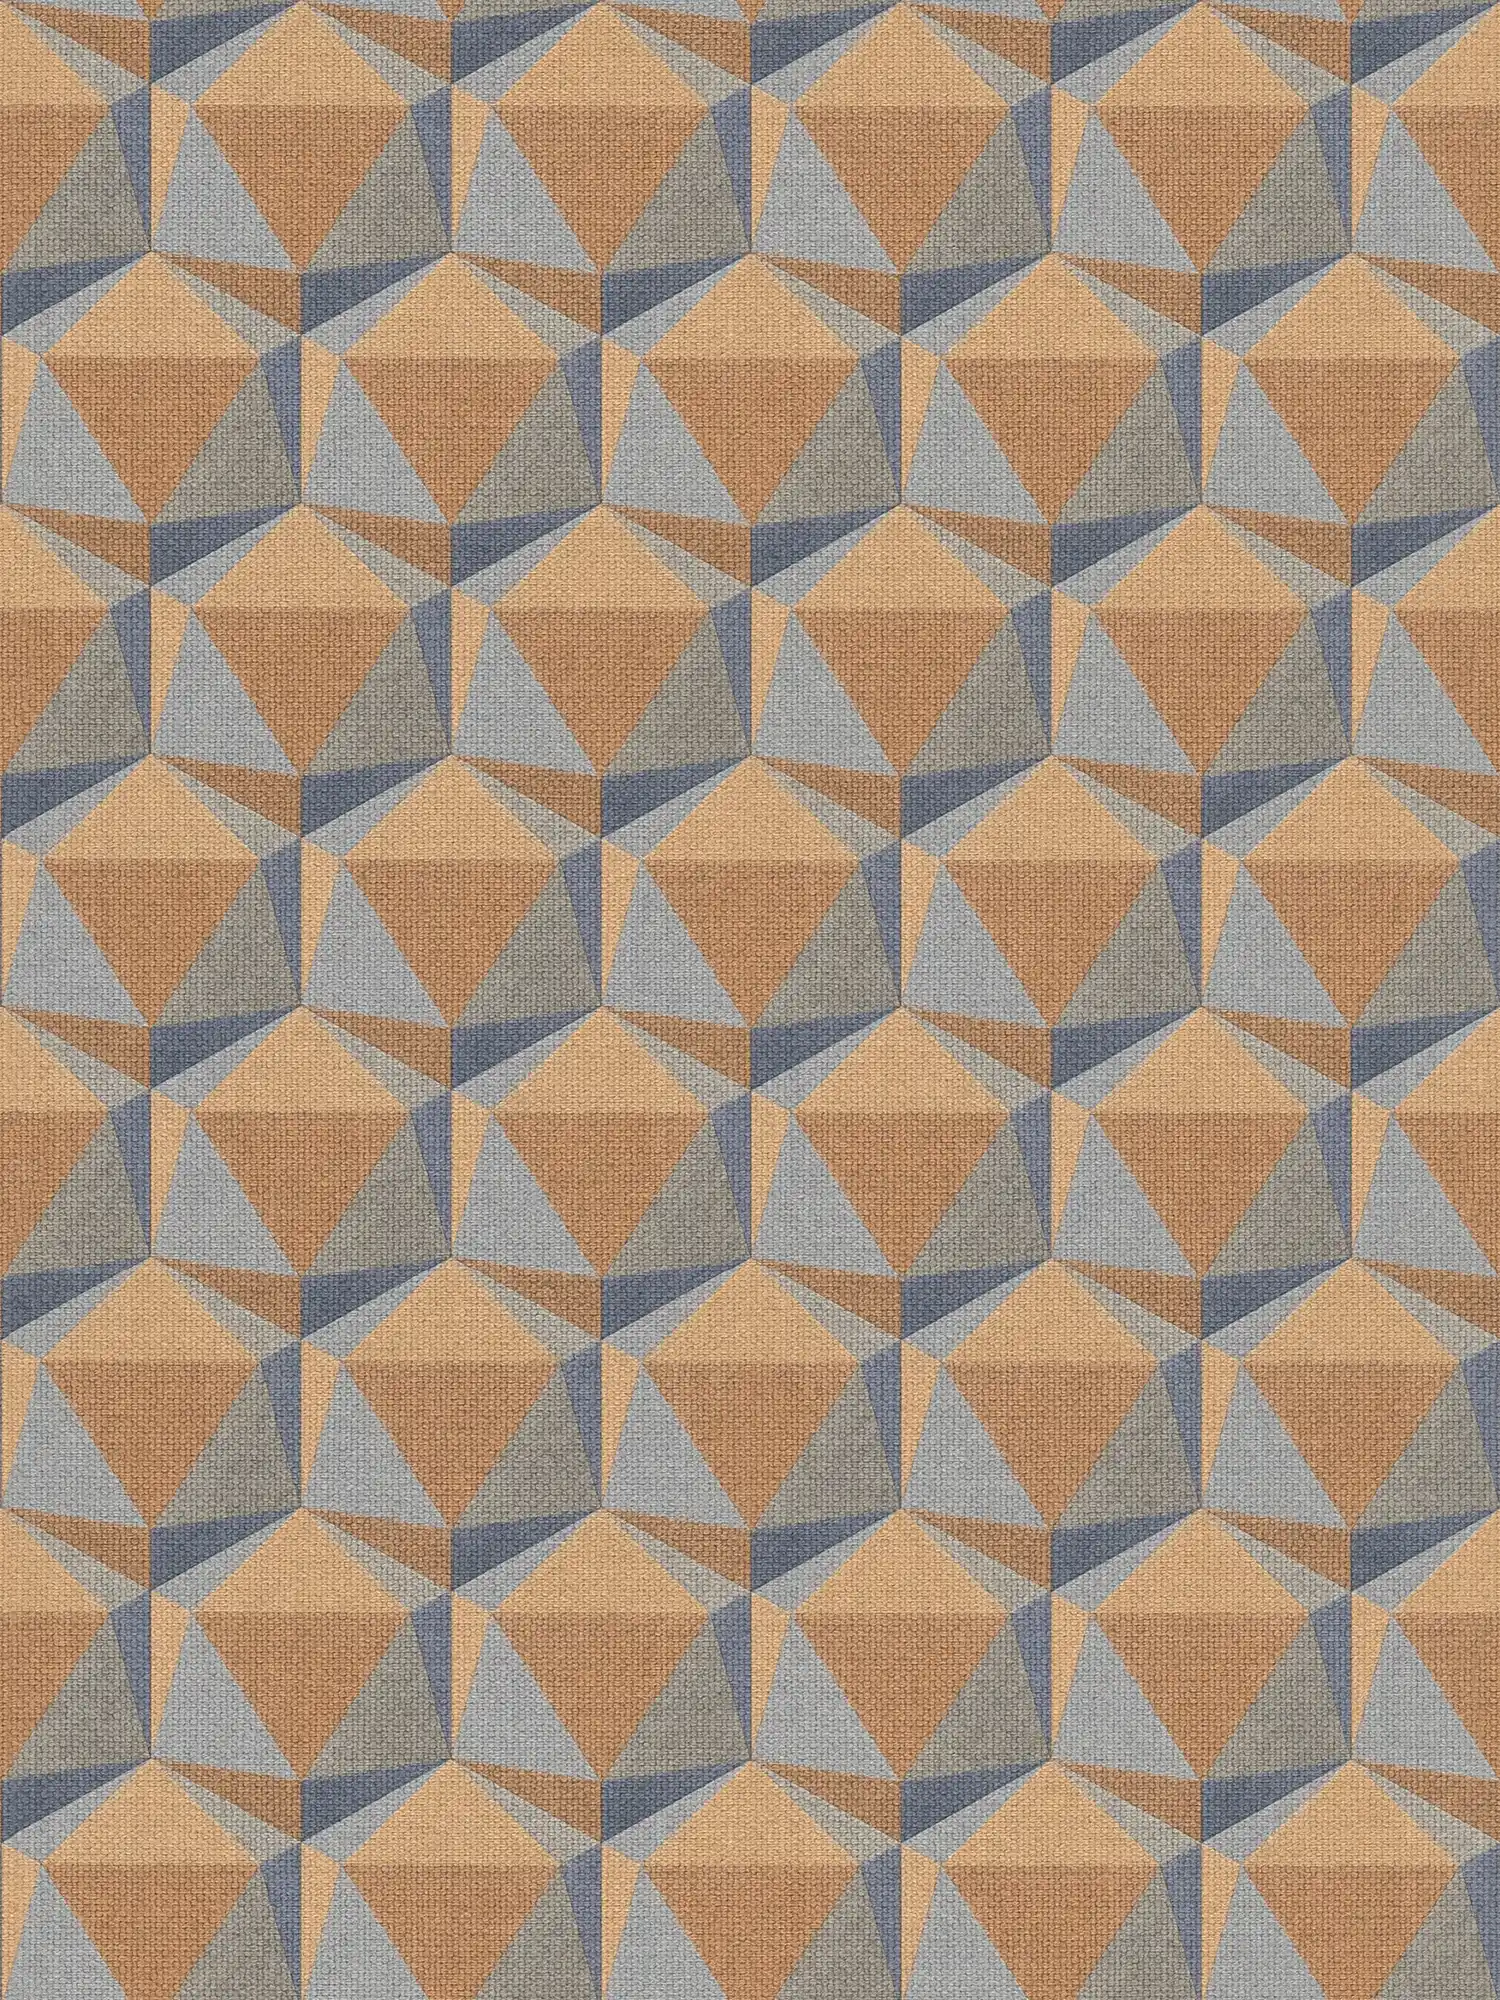         Grafiktapete Retro Muster mit 3D Design – Orange, Blau
    